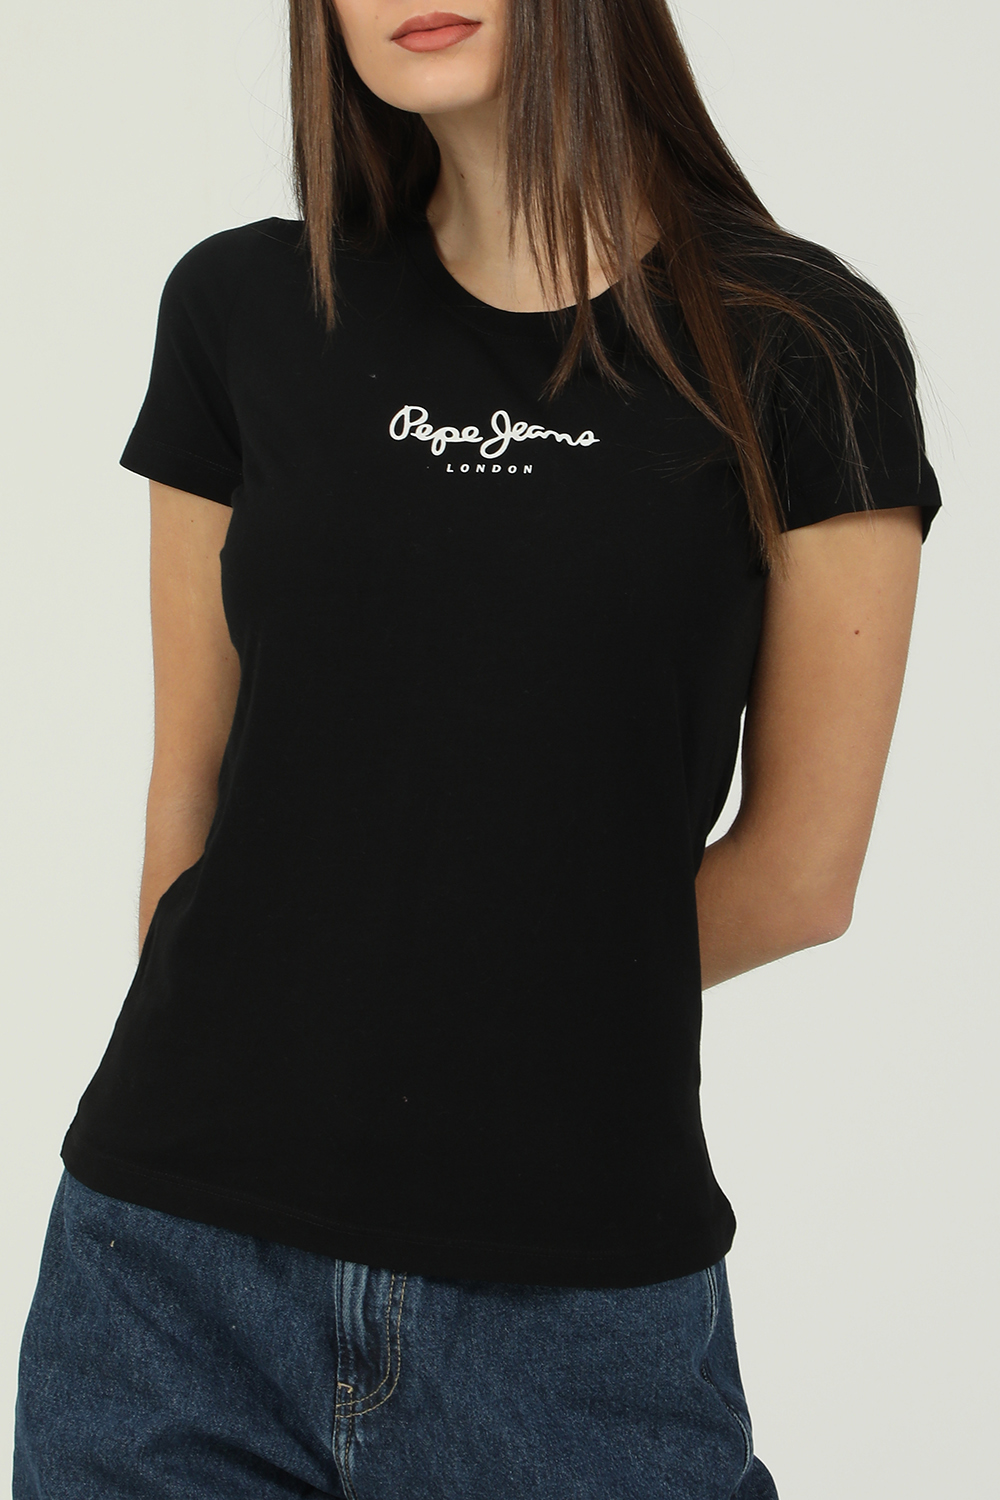 Γυναικεία/Ρούχα/Μπλούζες/Κοντομάνικες PEPE JEANS - Γυναικεία κοντομάνικη μπλούζα PEPE JEANS NEW VIRGINIA μαύρη